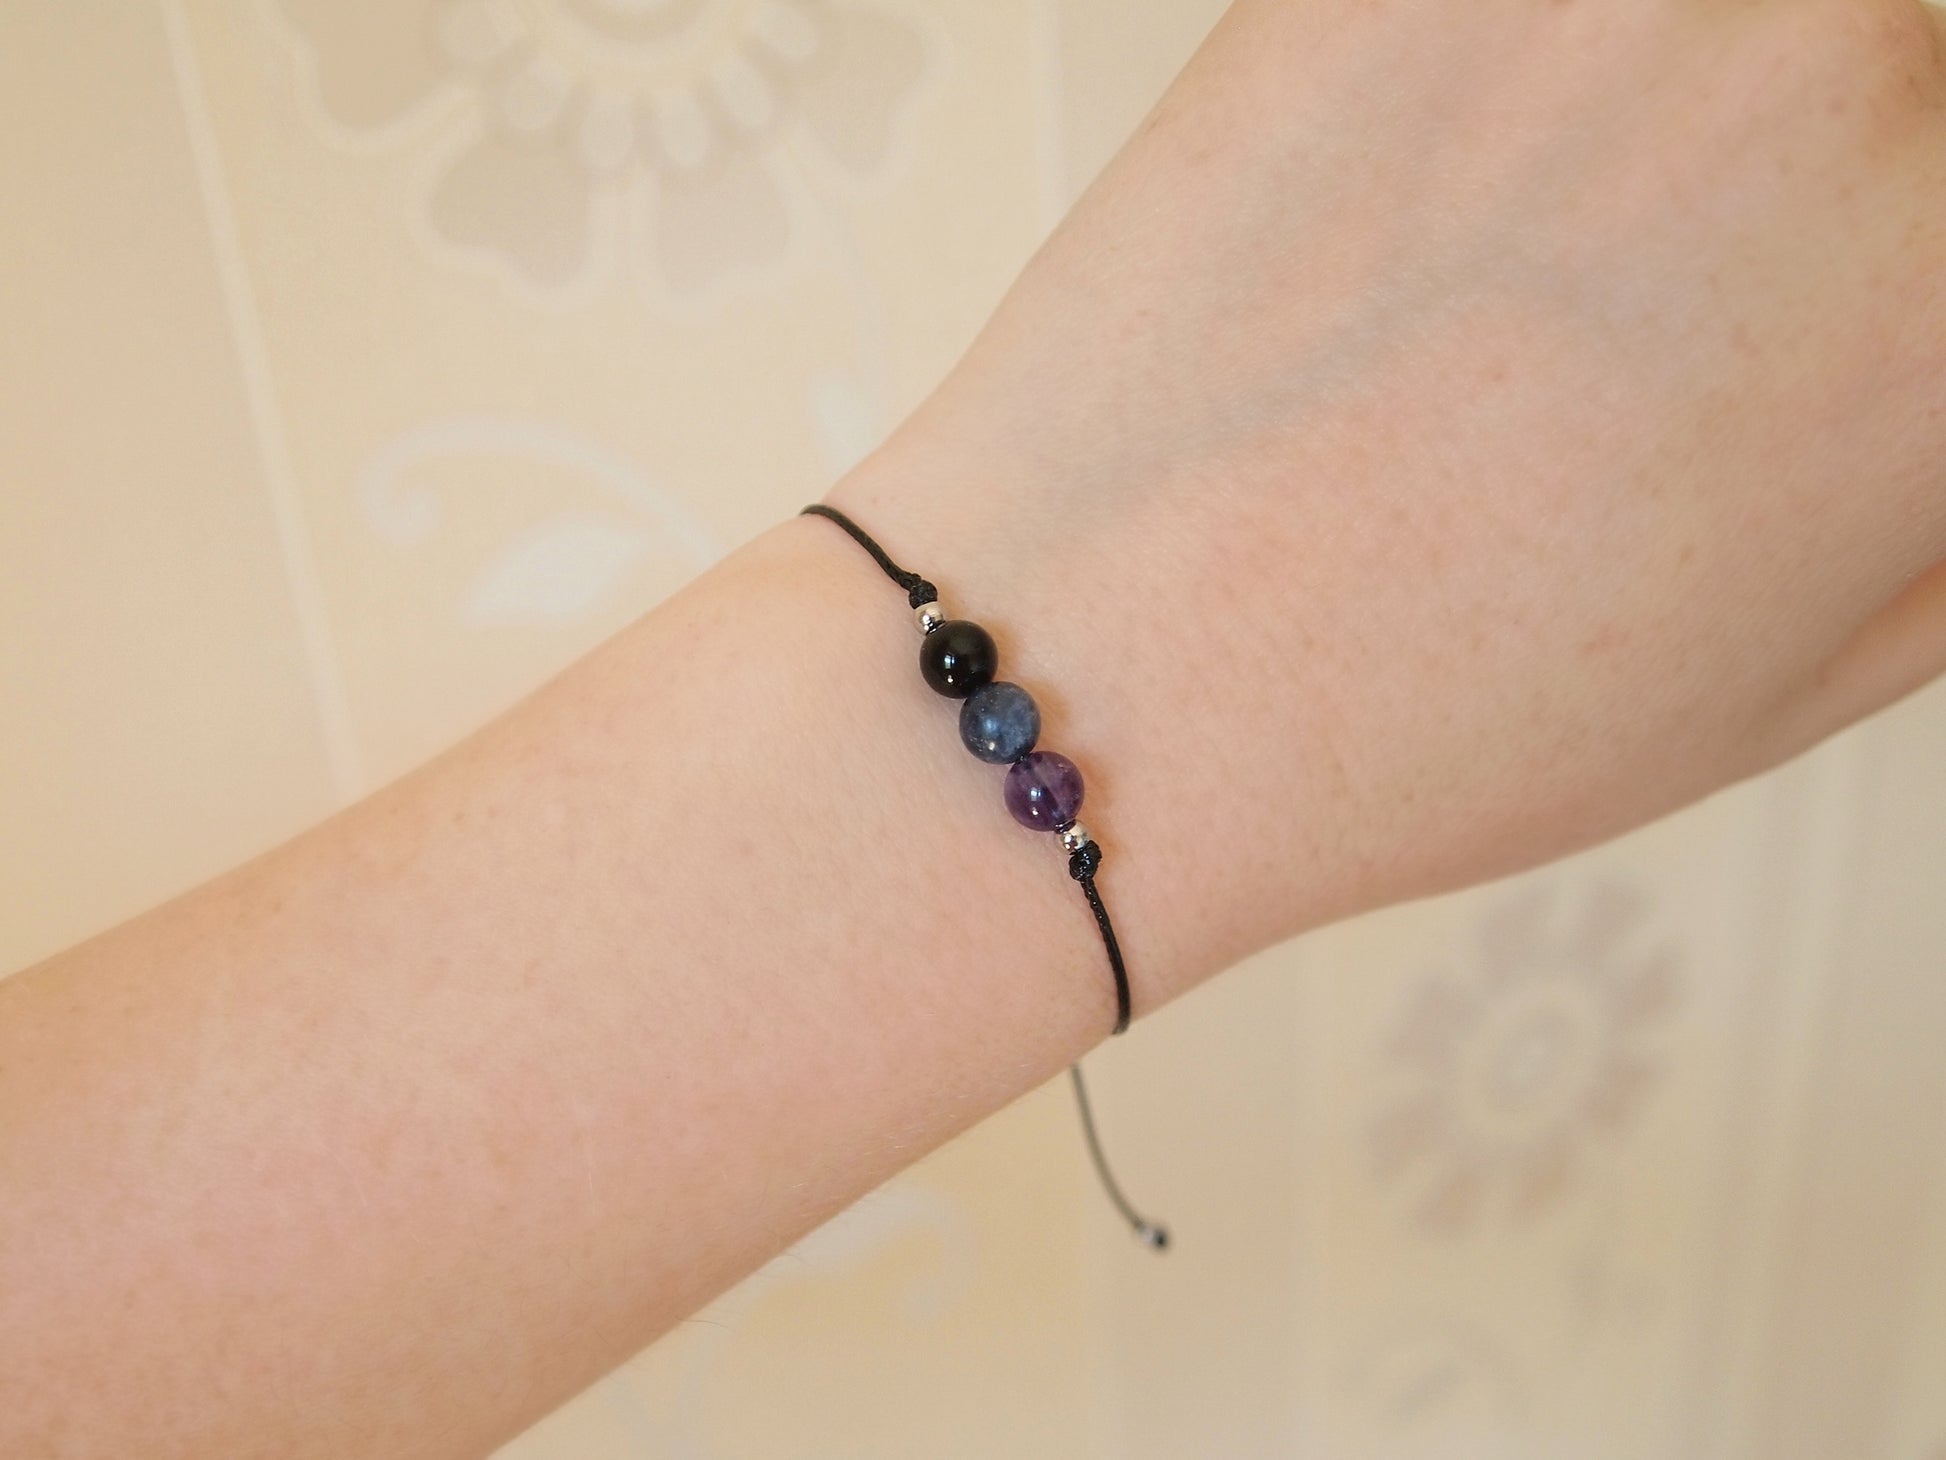 gemstone bracelet for focusing